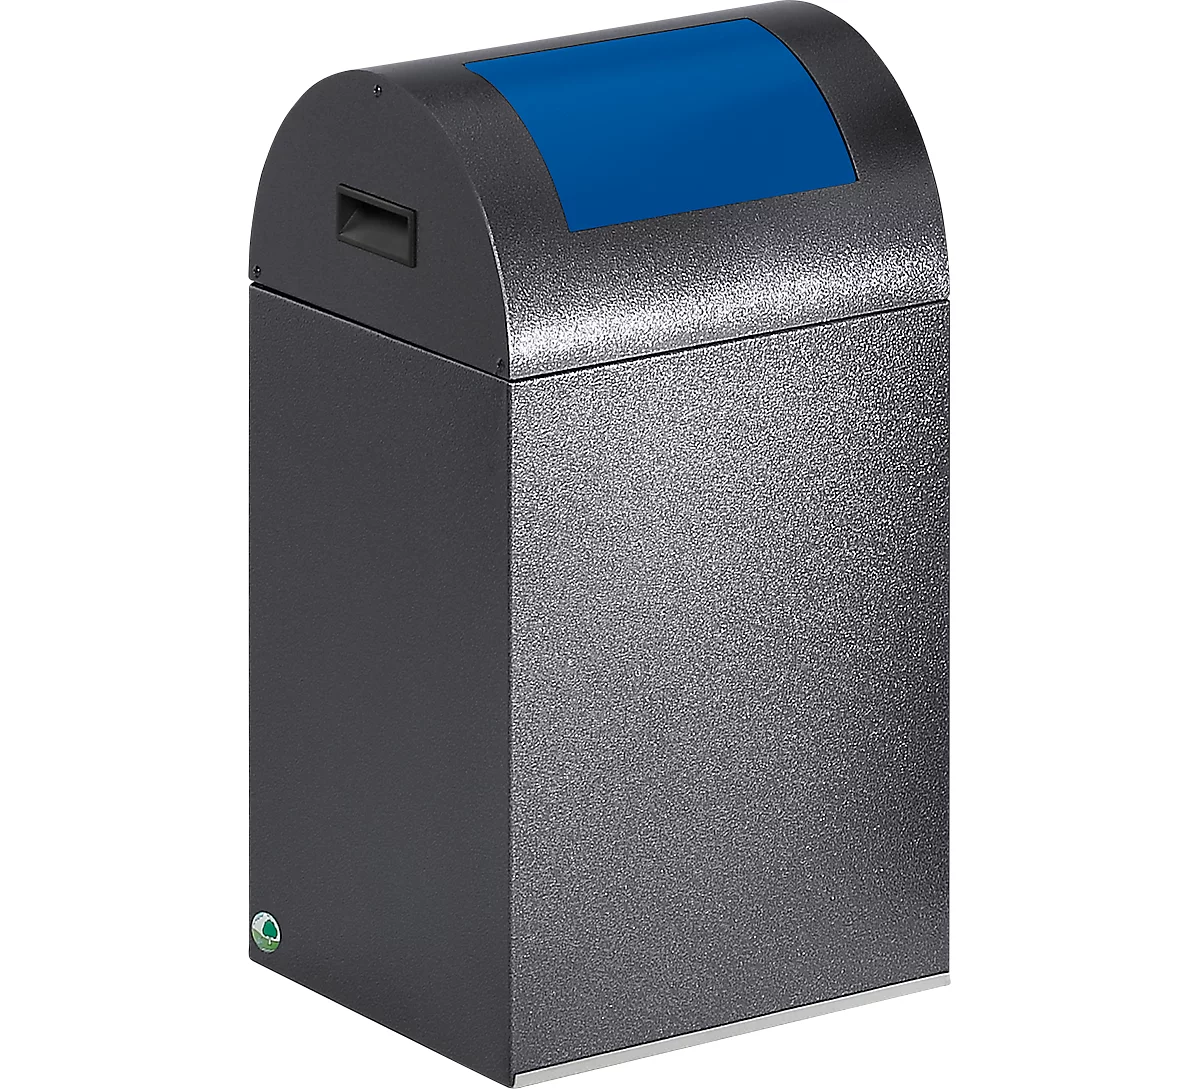 Zelfblussende afvalverzamelaar voor recycleerbaar afval 40R, antiekzilver/blauw